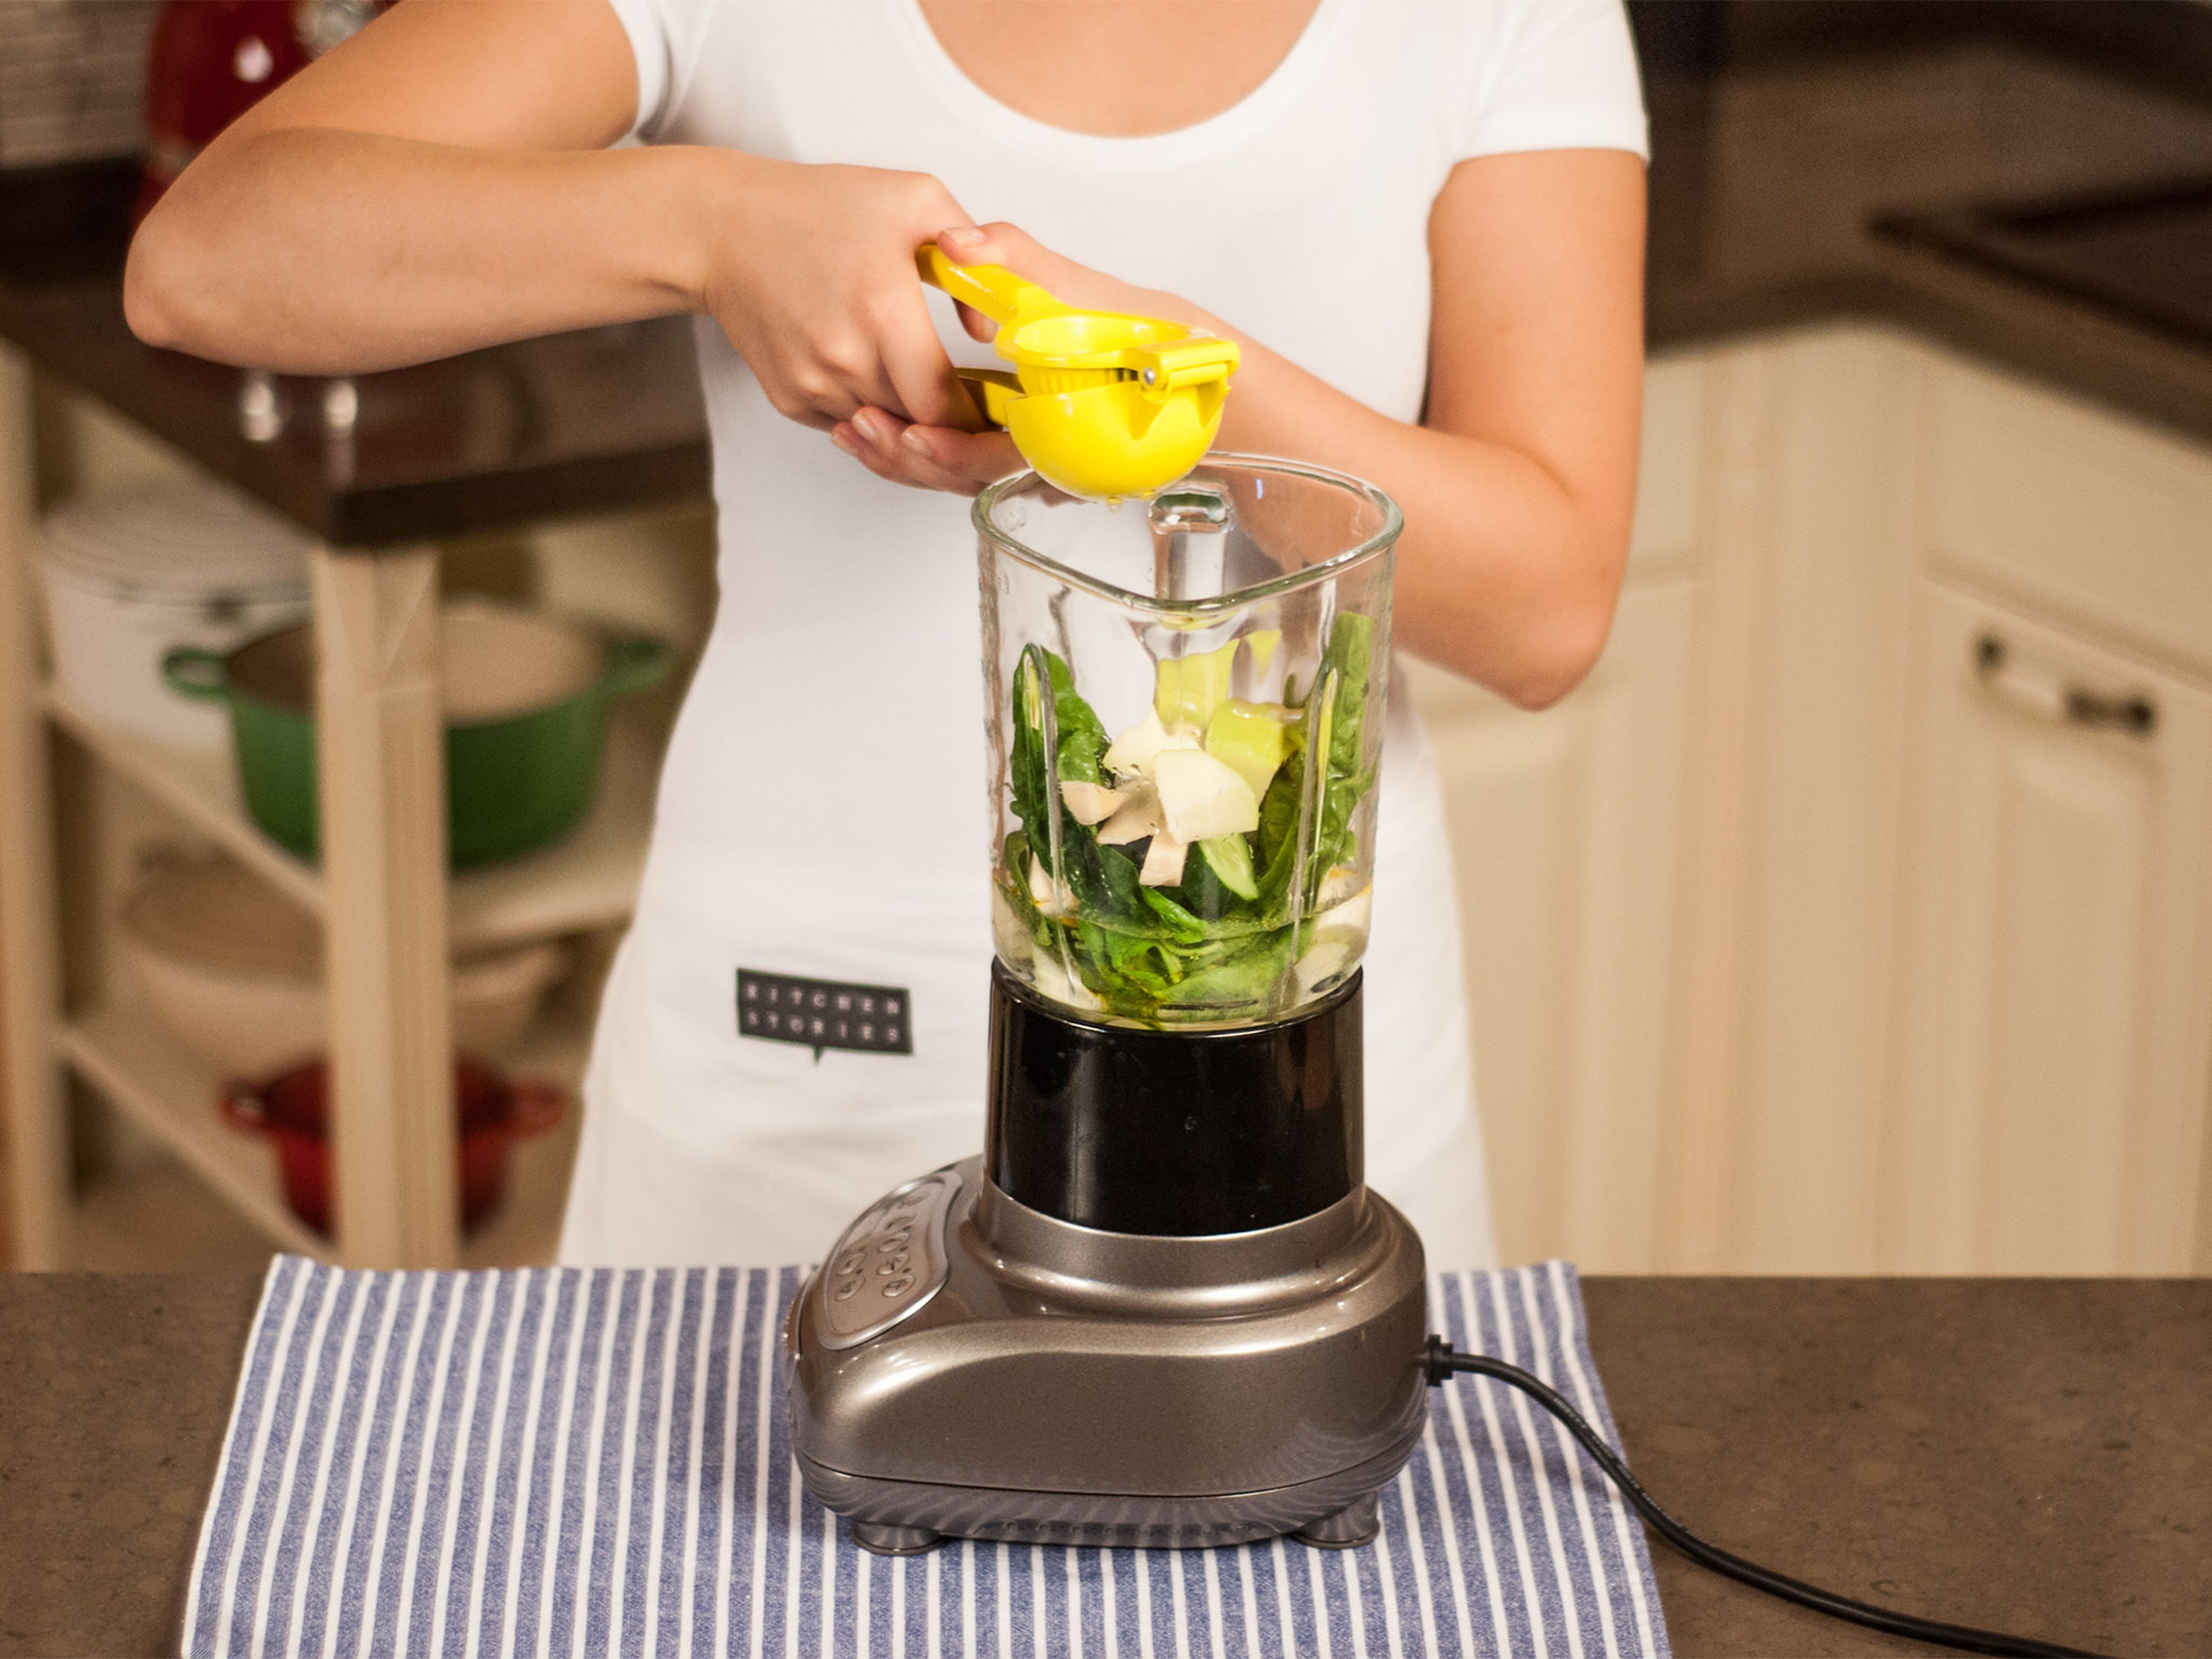 Gemüse und Obst in den Mixer geben. Agavendicksaft, Leinsamenöl, Zitronensaft und Wasser hinzugeben